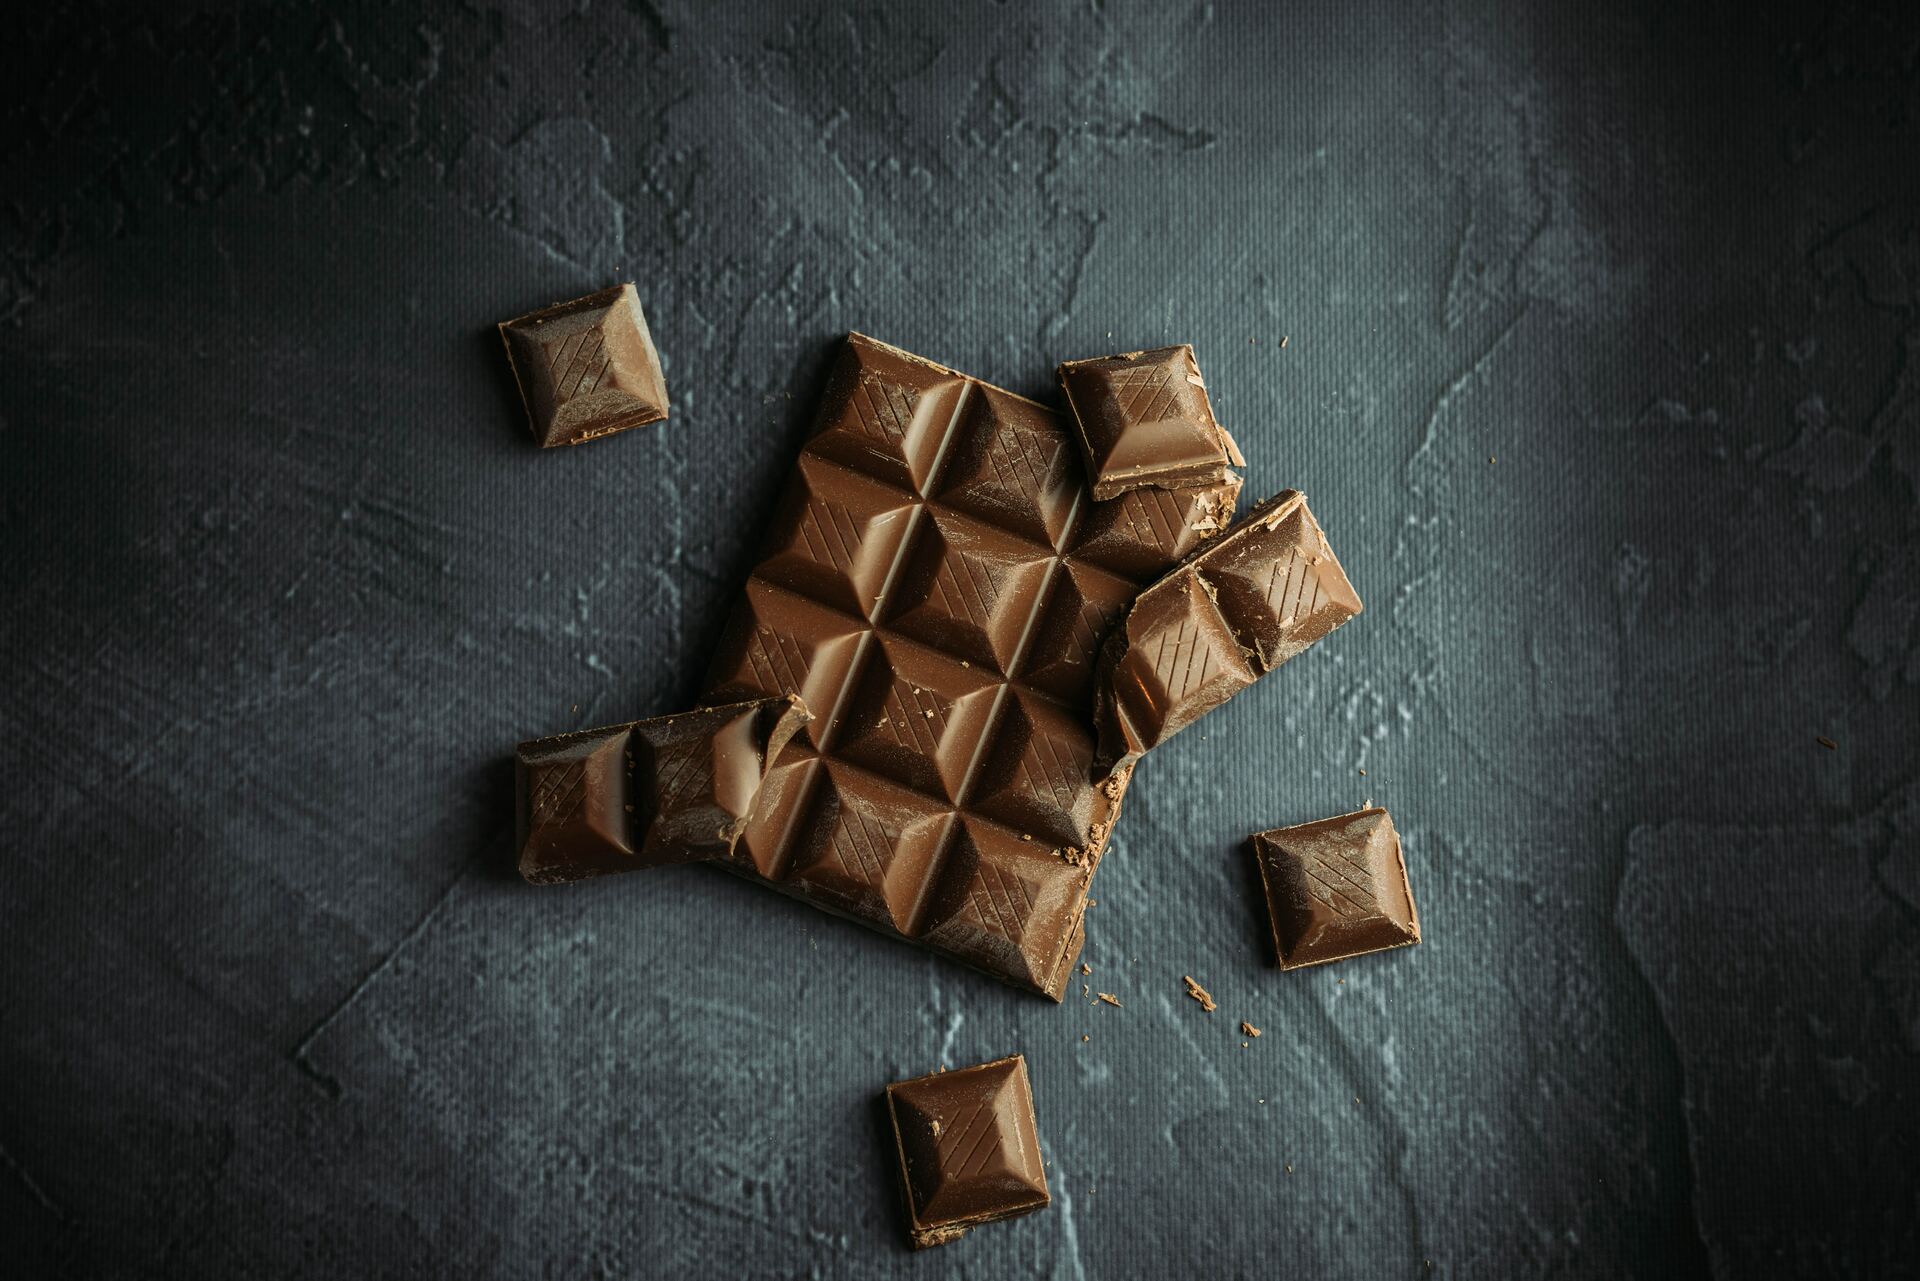 México consume 700 gramos de chocolate per cápita al año, según informe